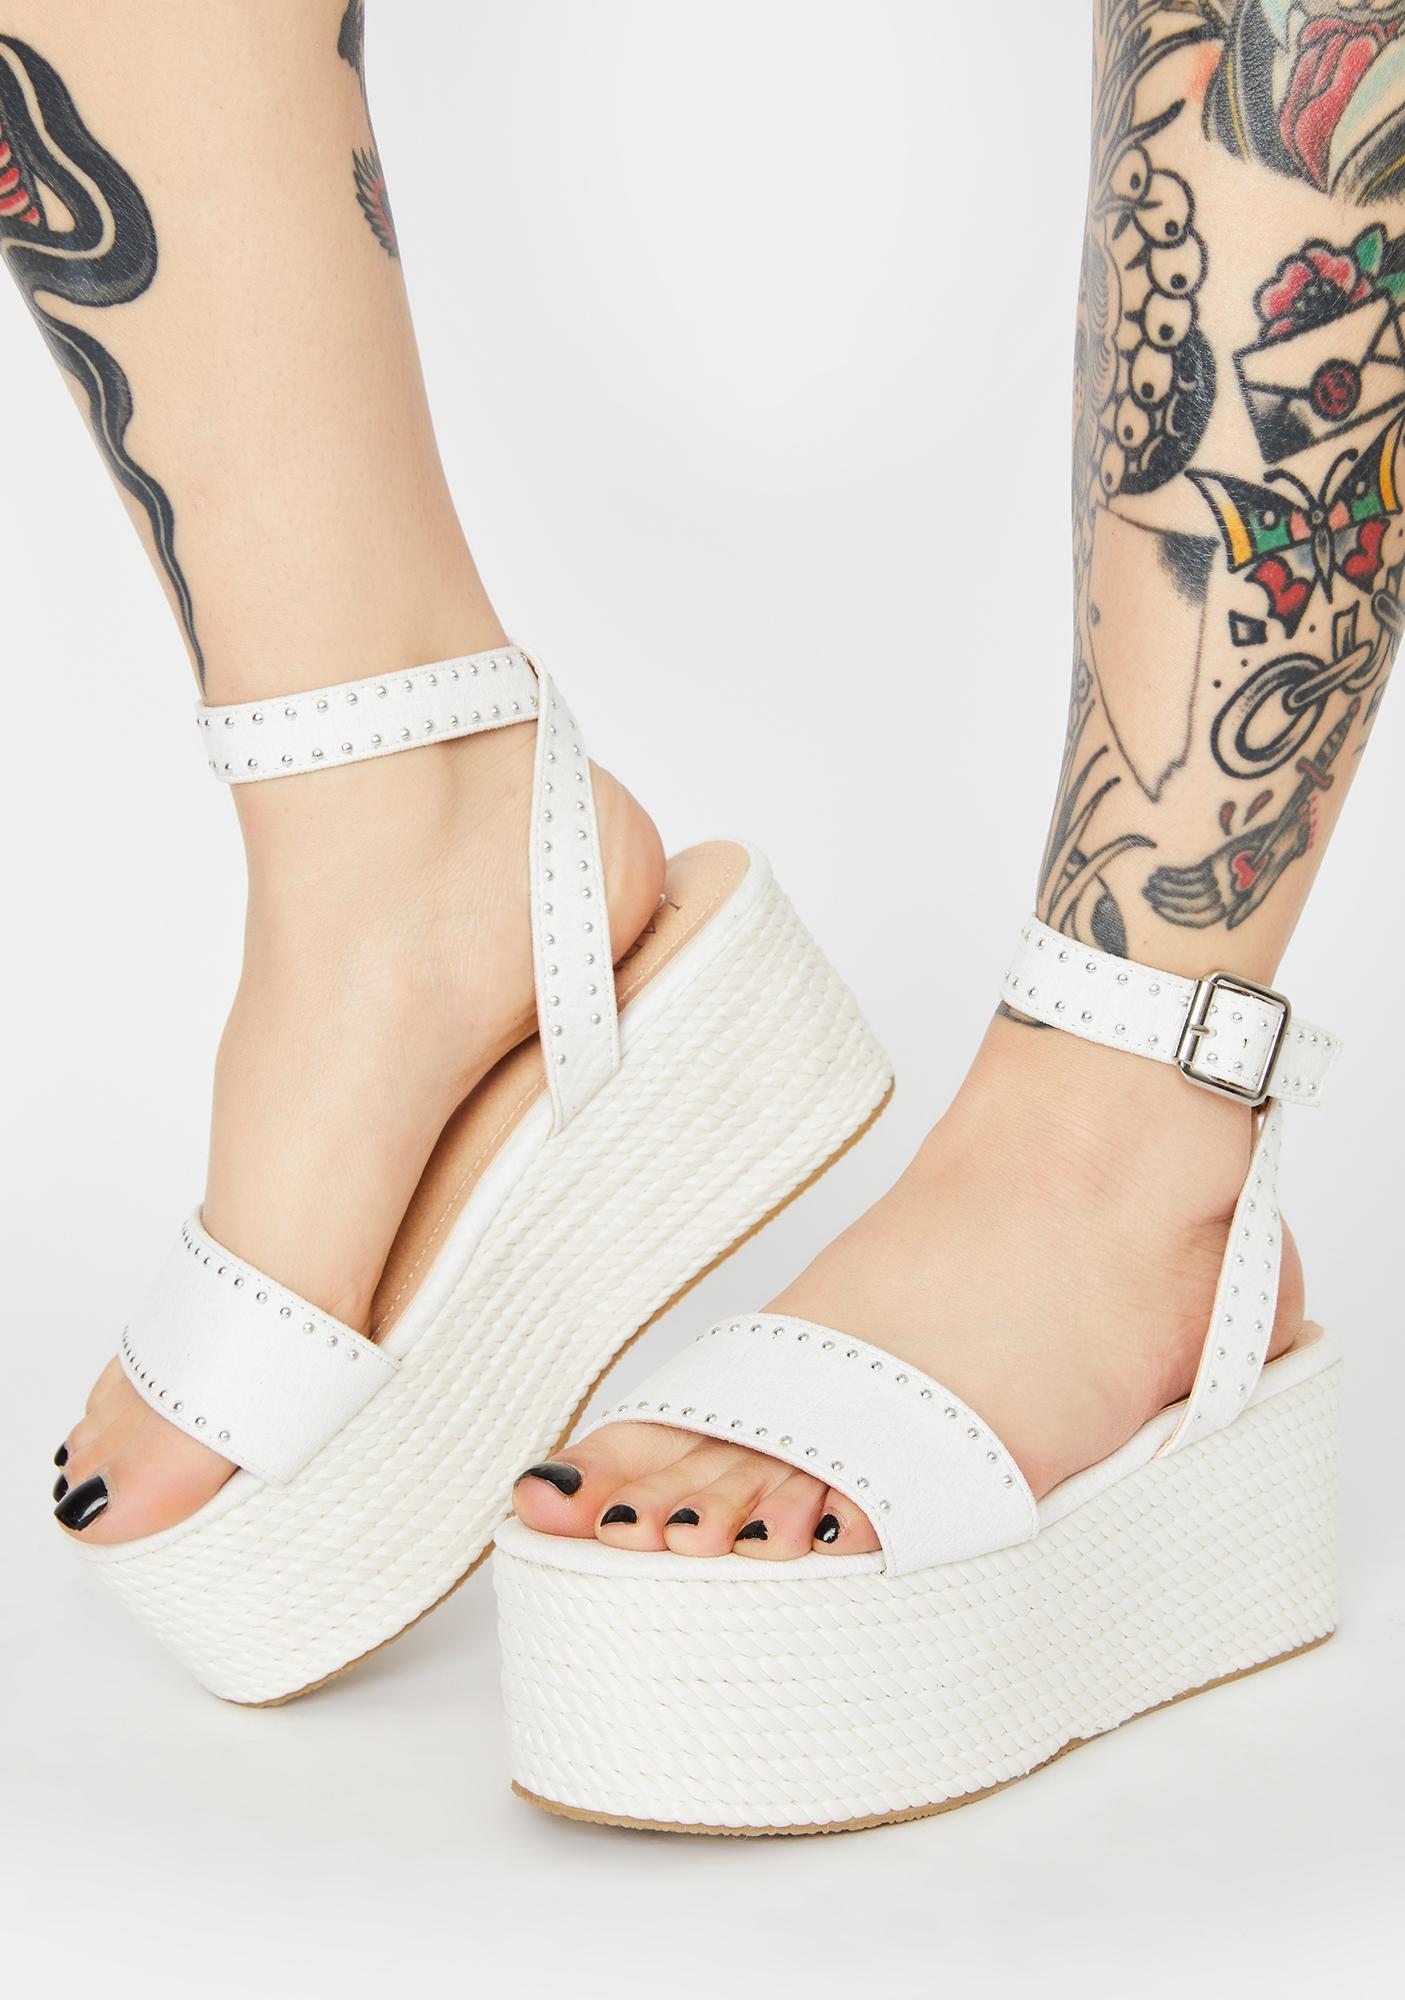 Studded Wicker Platform Sandals - White 